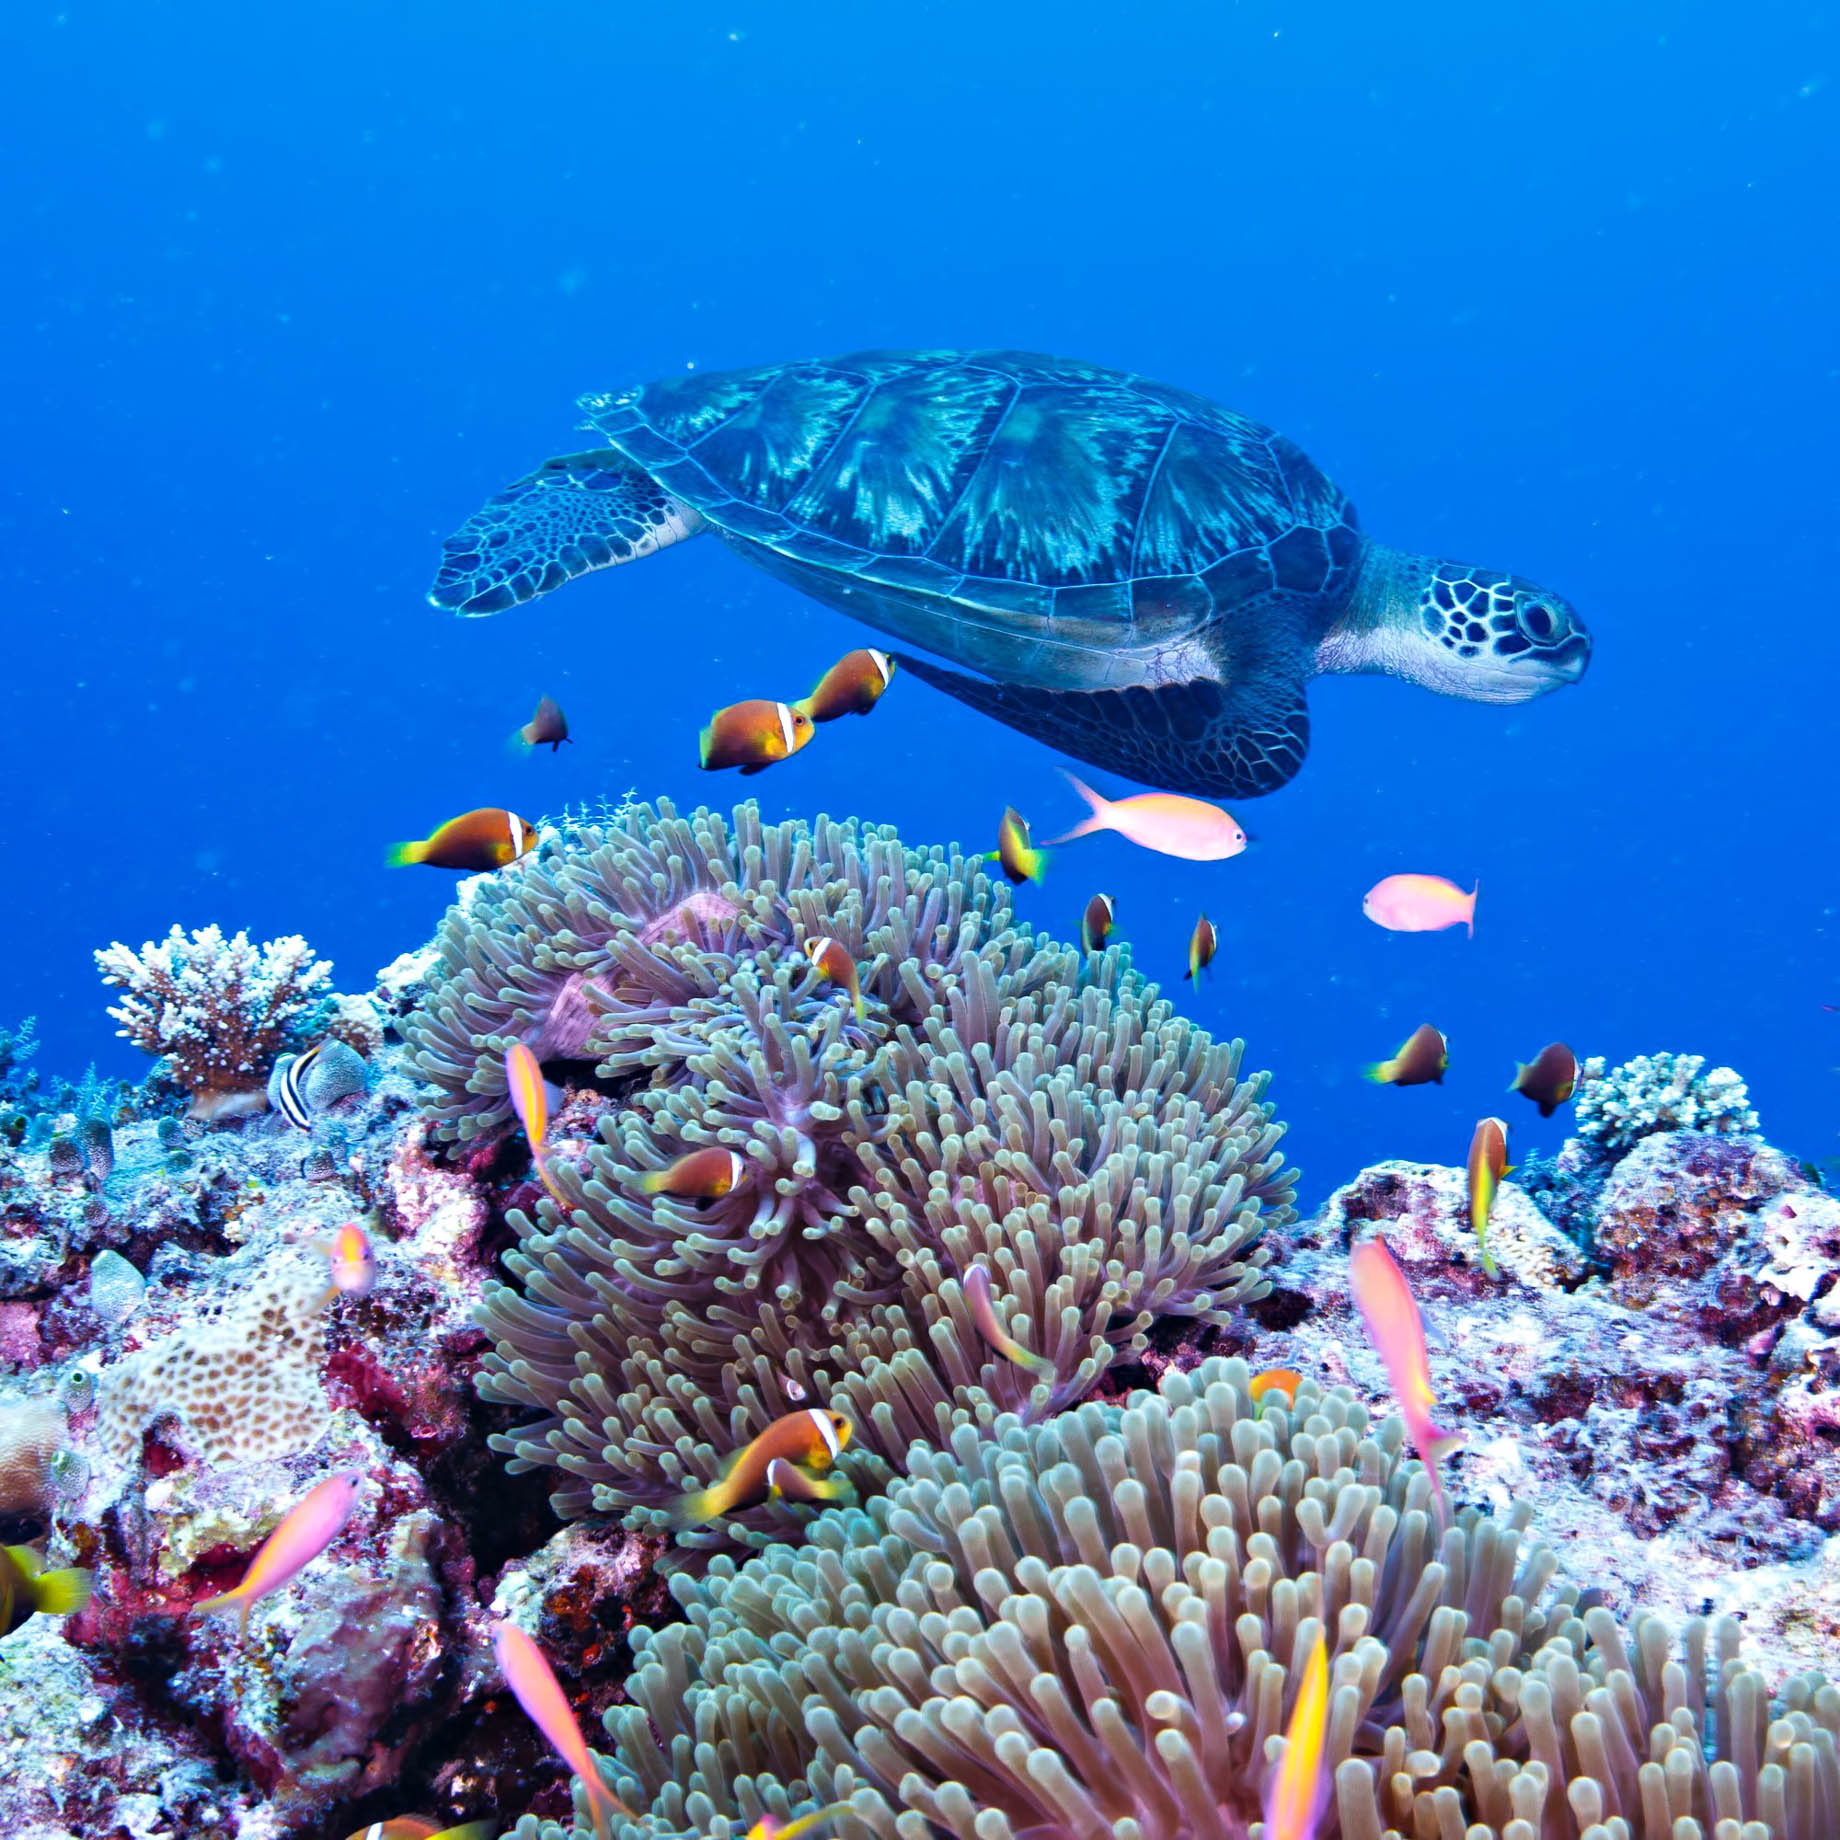 Six Senses Laamu Resort - Laamu Atoll, Maldives - Sea Turtle